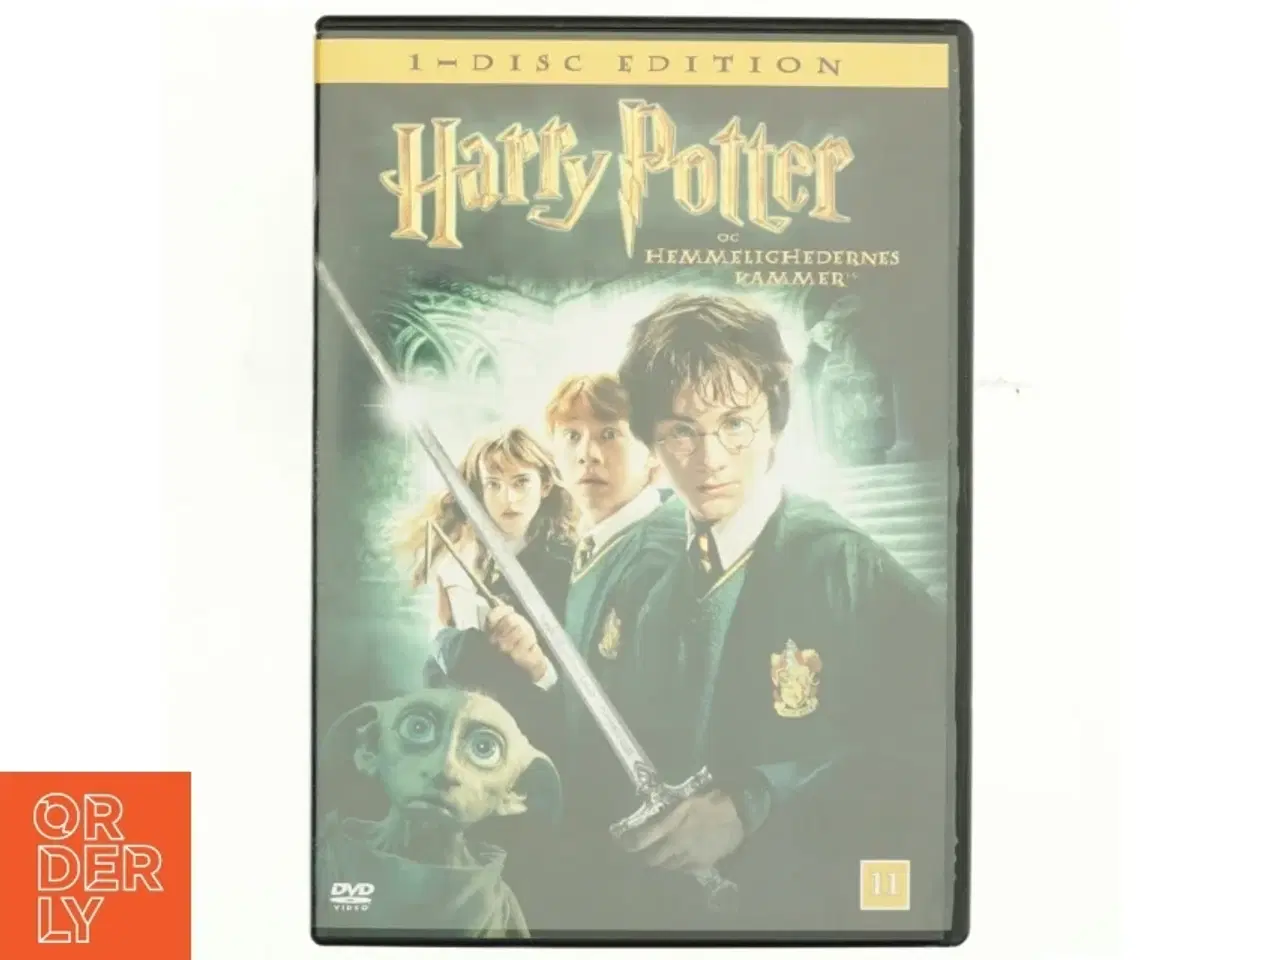 Billede 1 - Hemmelighedernes Kammer, Harry Potter